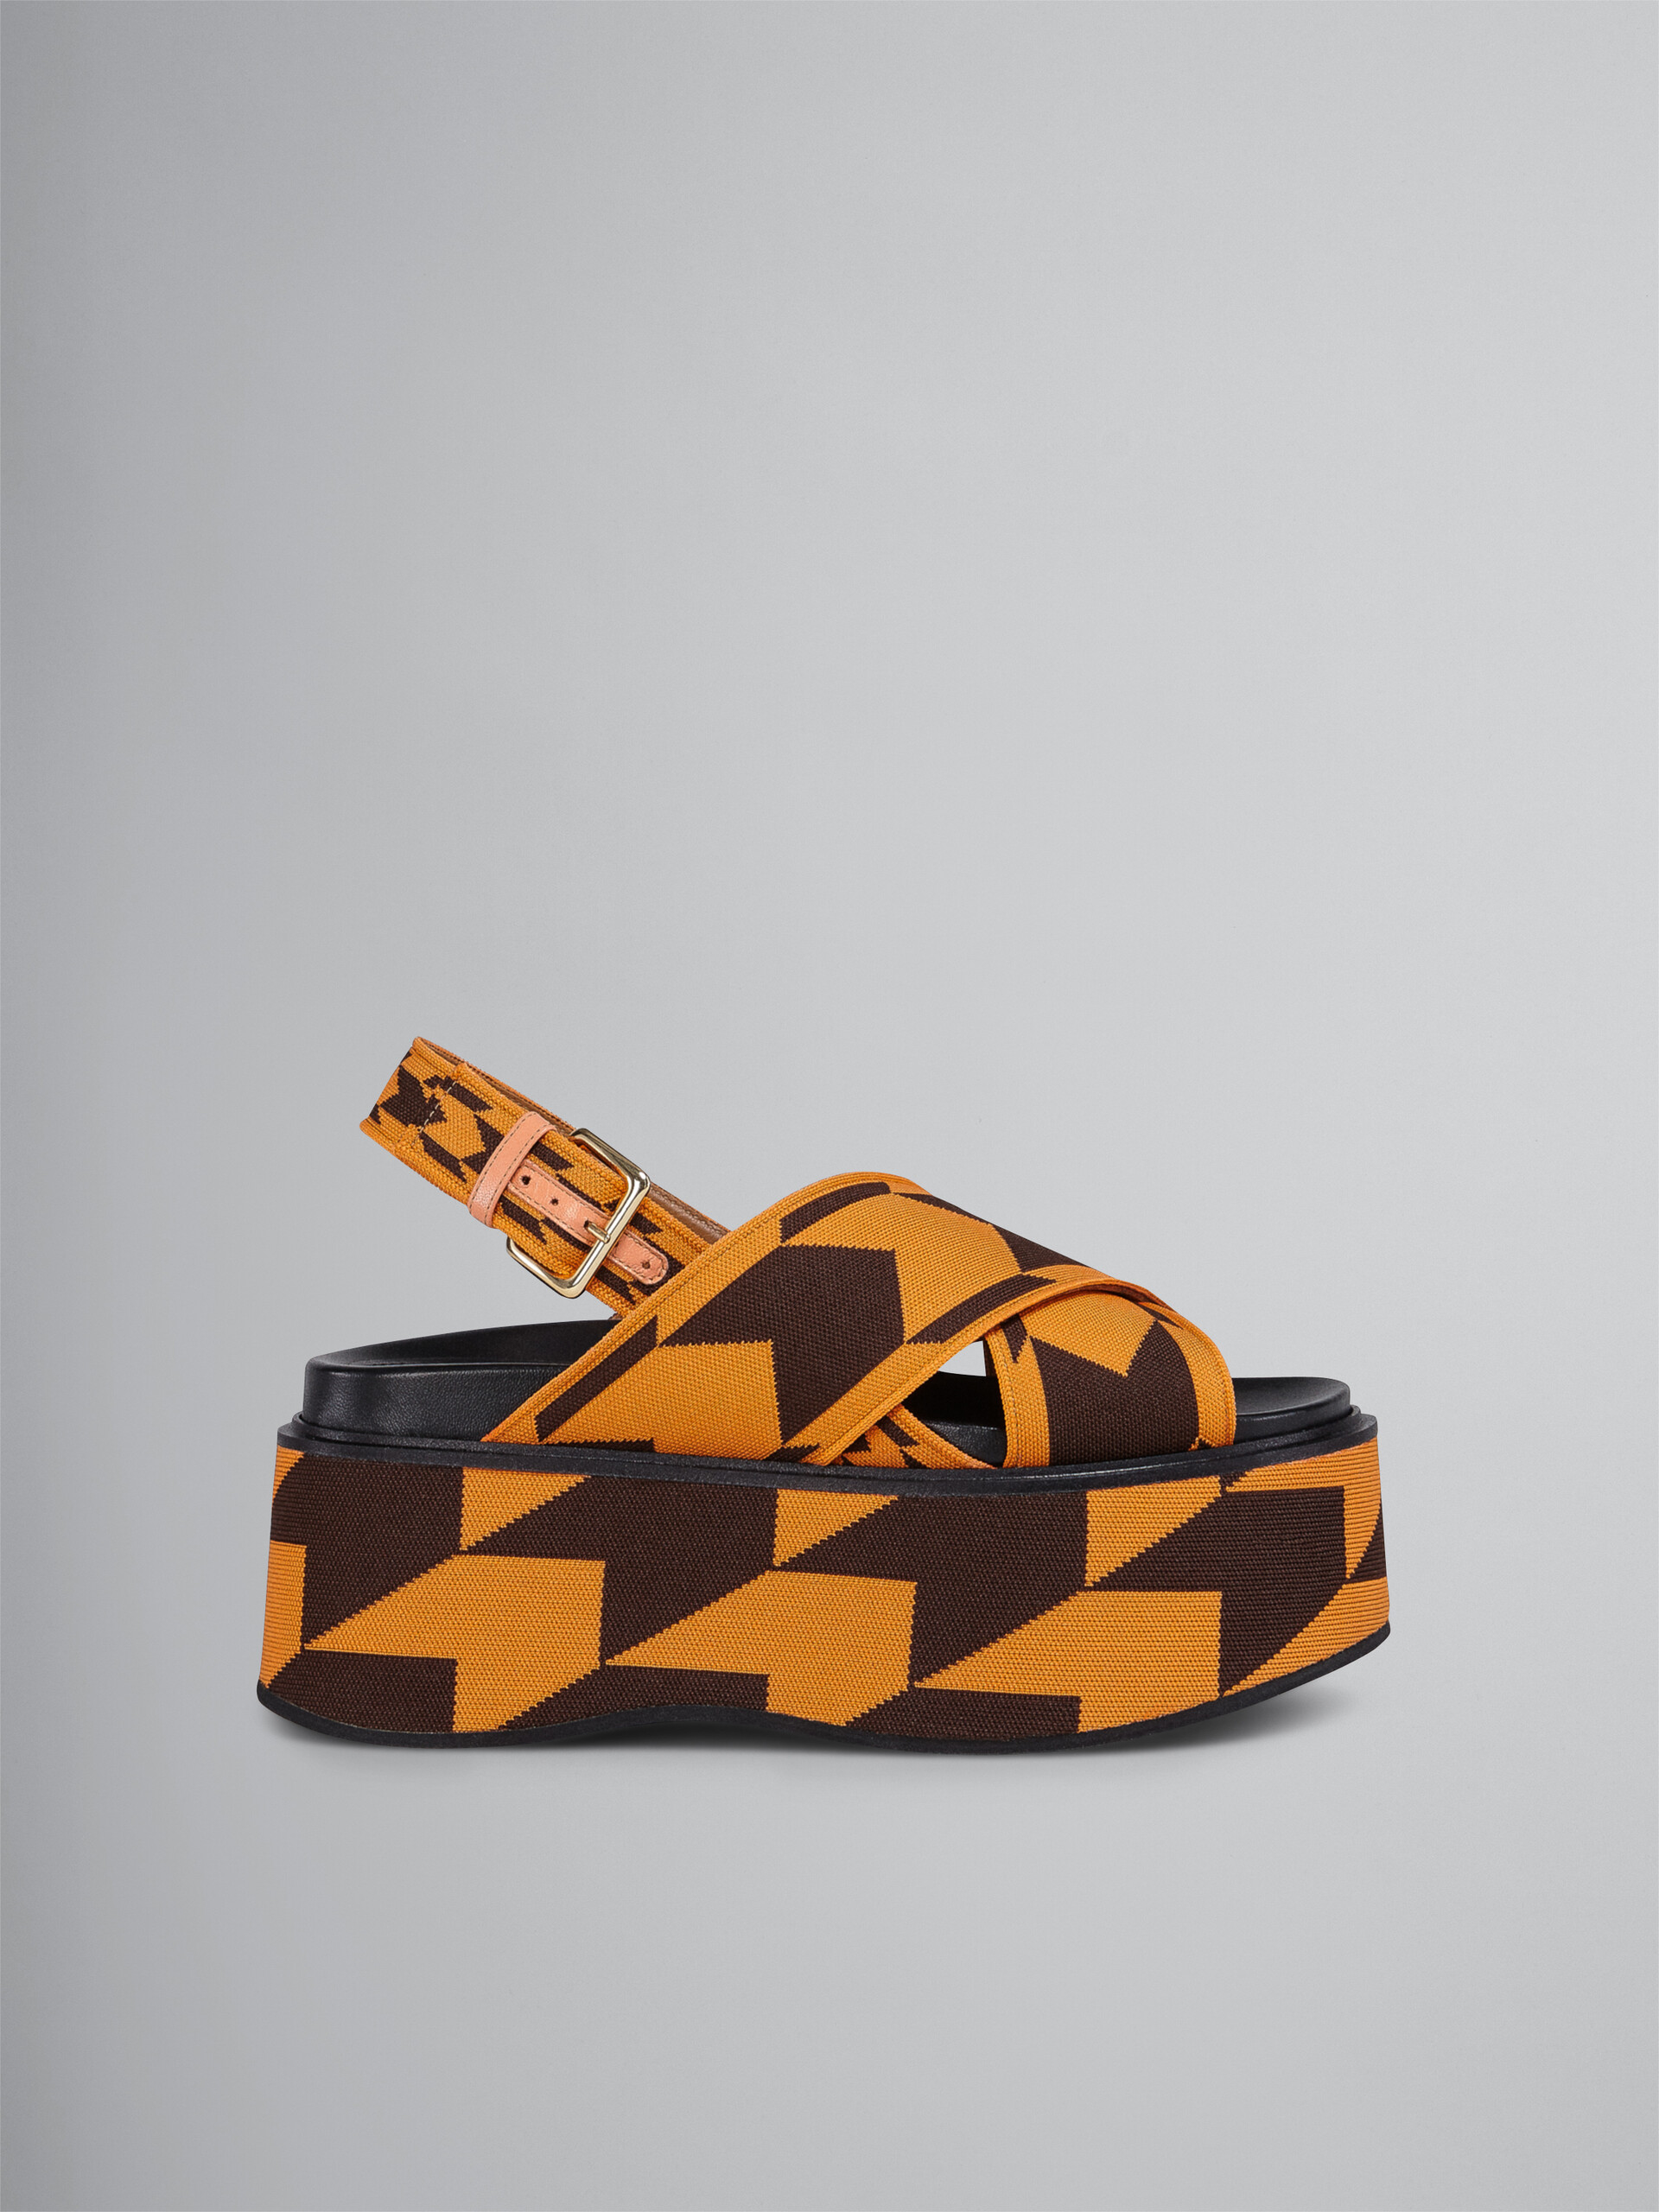 Houndstooth jacquard wedge sandal - Sandals - Image 1